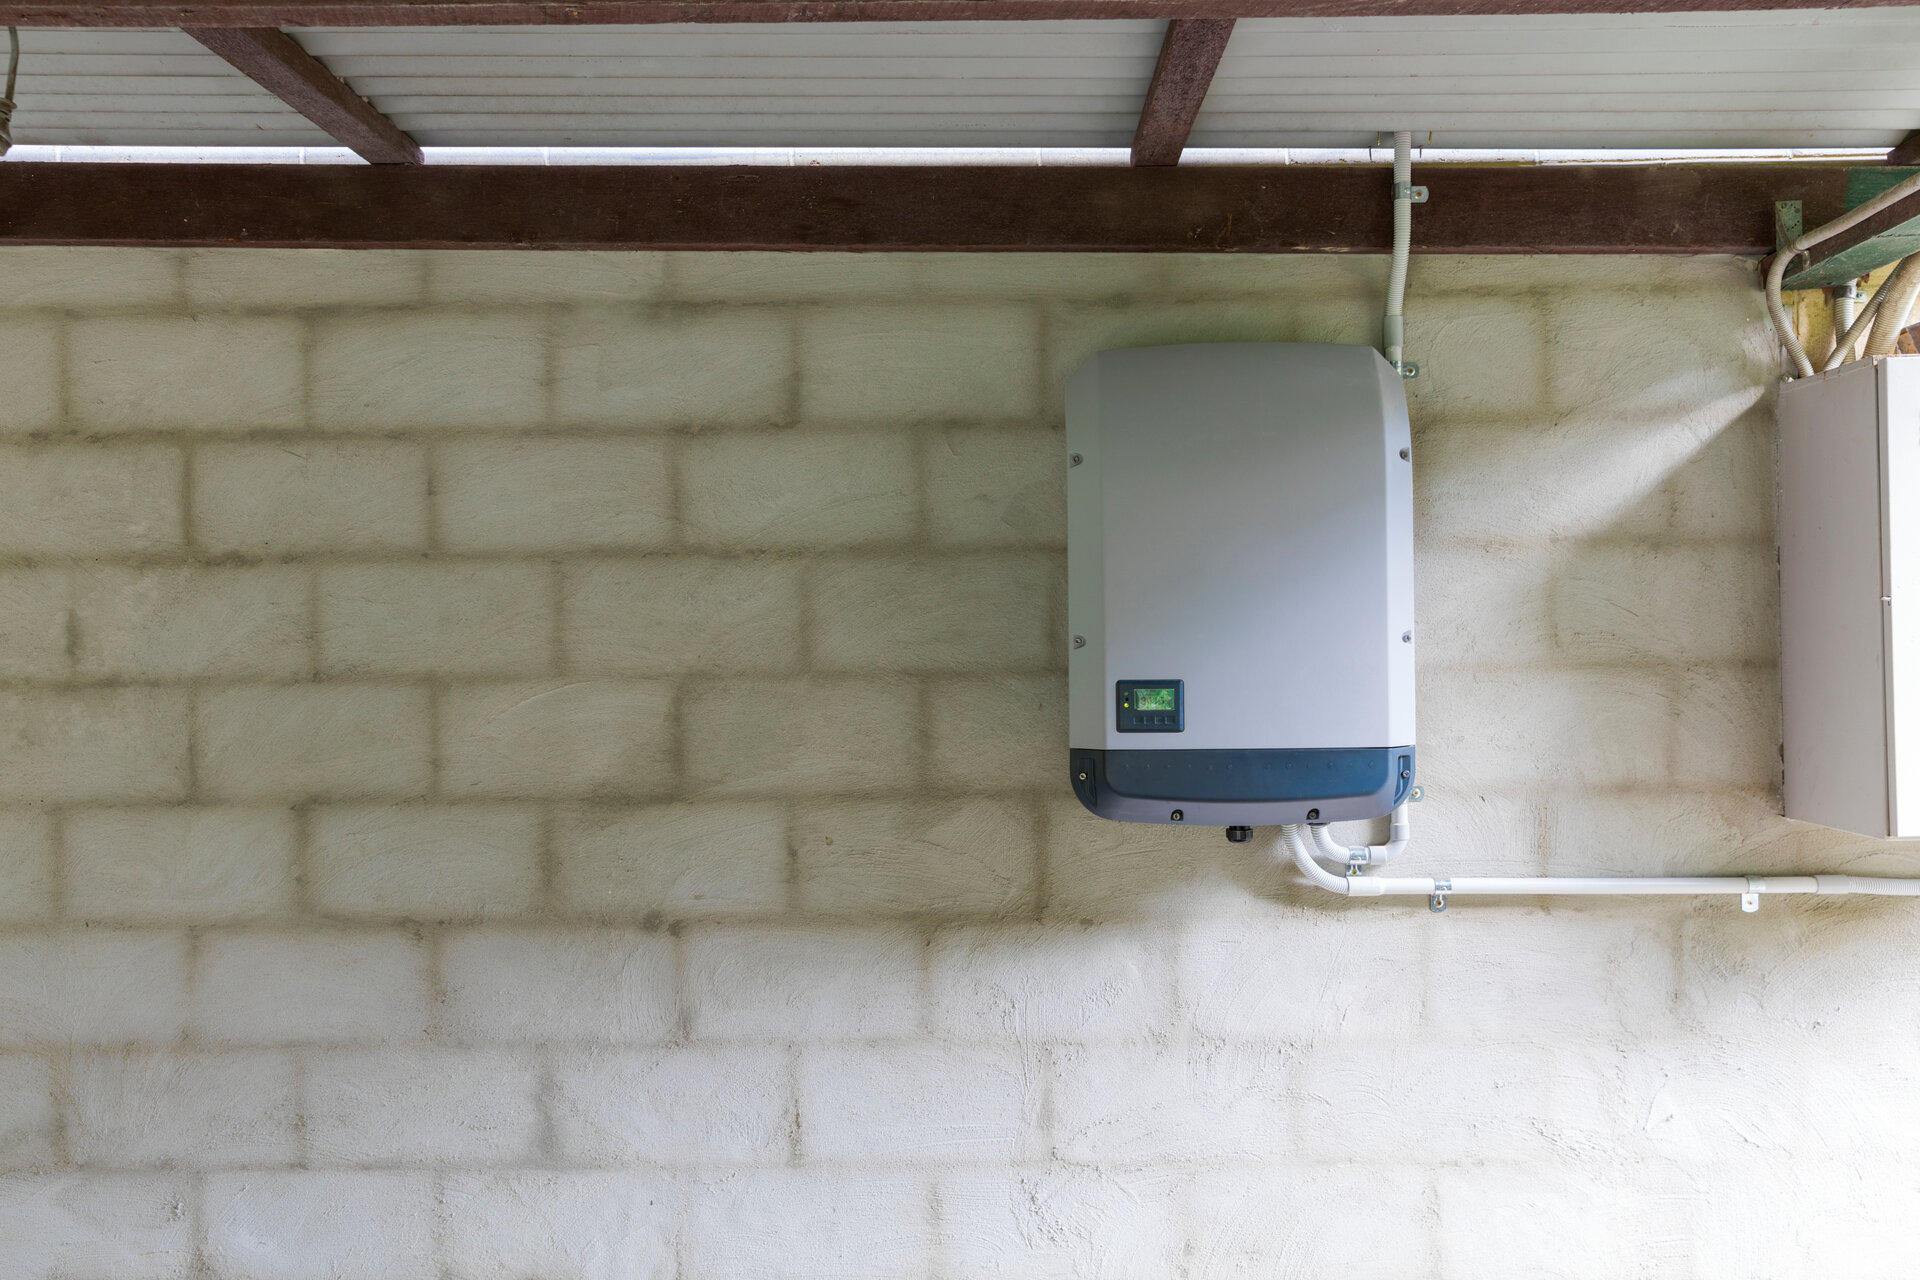 Solar-Wechselrichter montiert auf Ziegelwand in der Garage, Haussystem